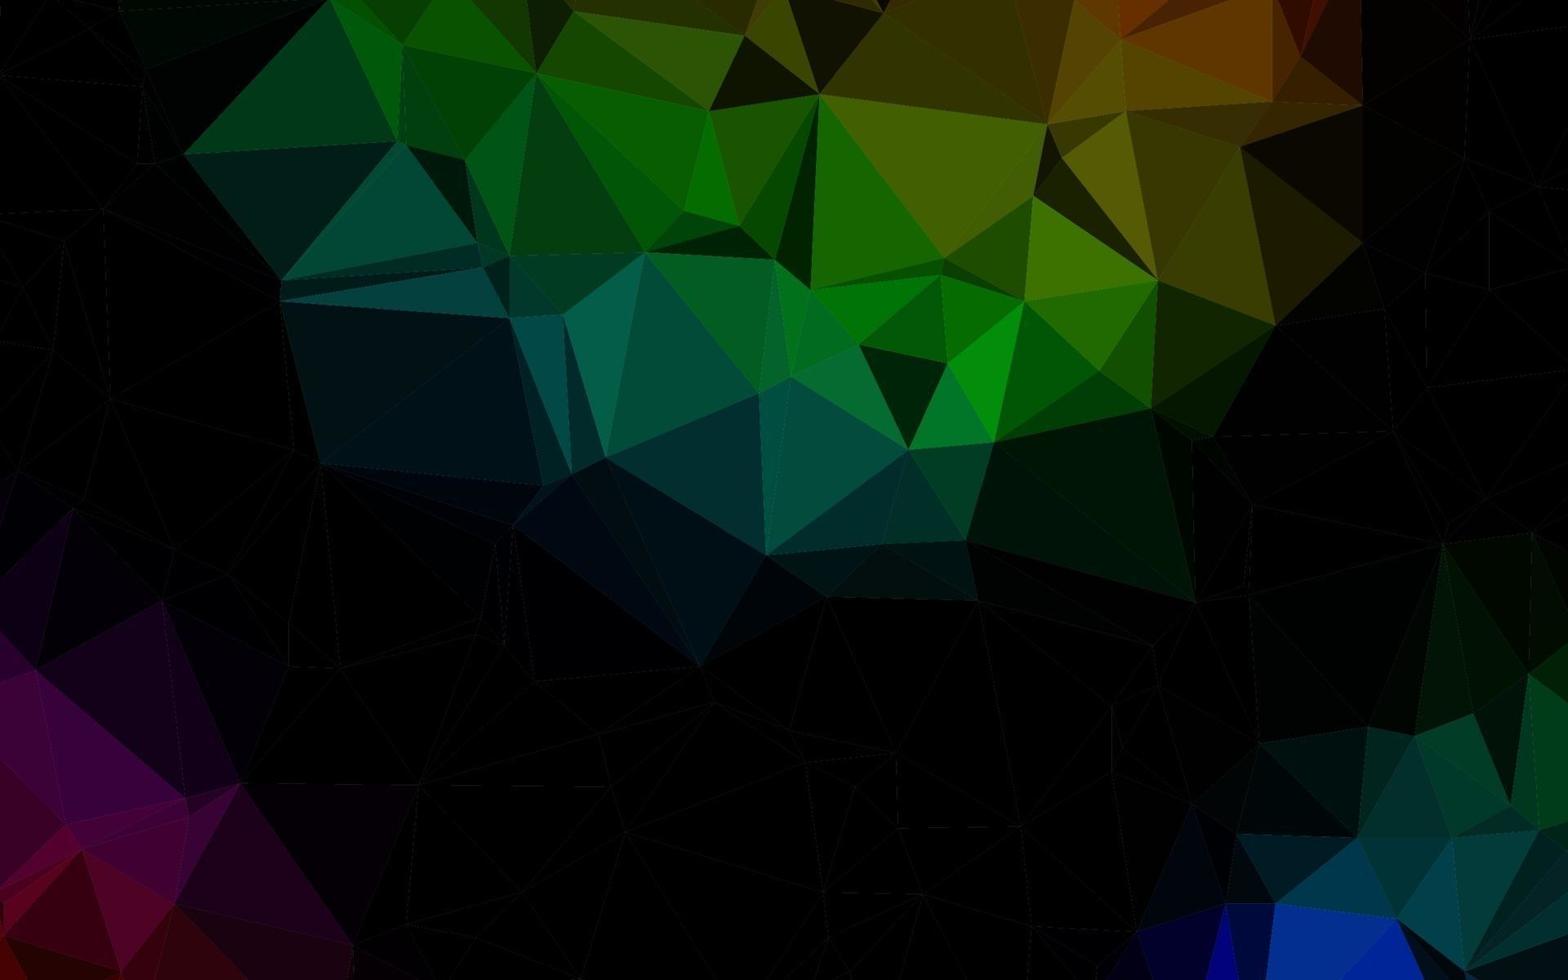 multicolore foncé, arrière-plan polygonal vectoriel arc-en-ciel.